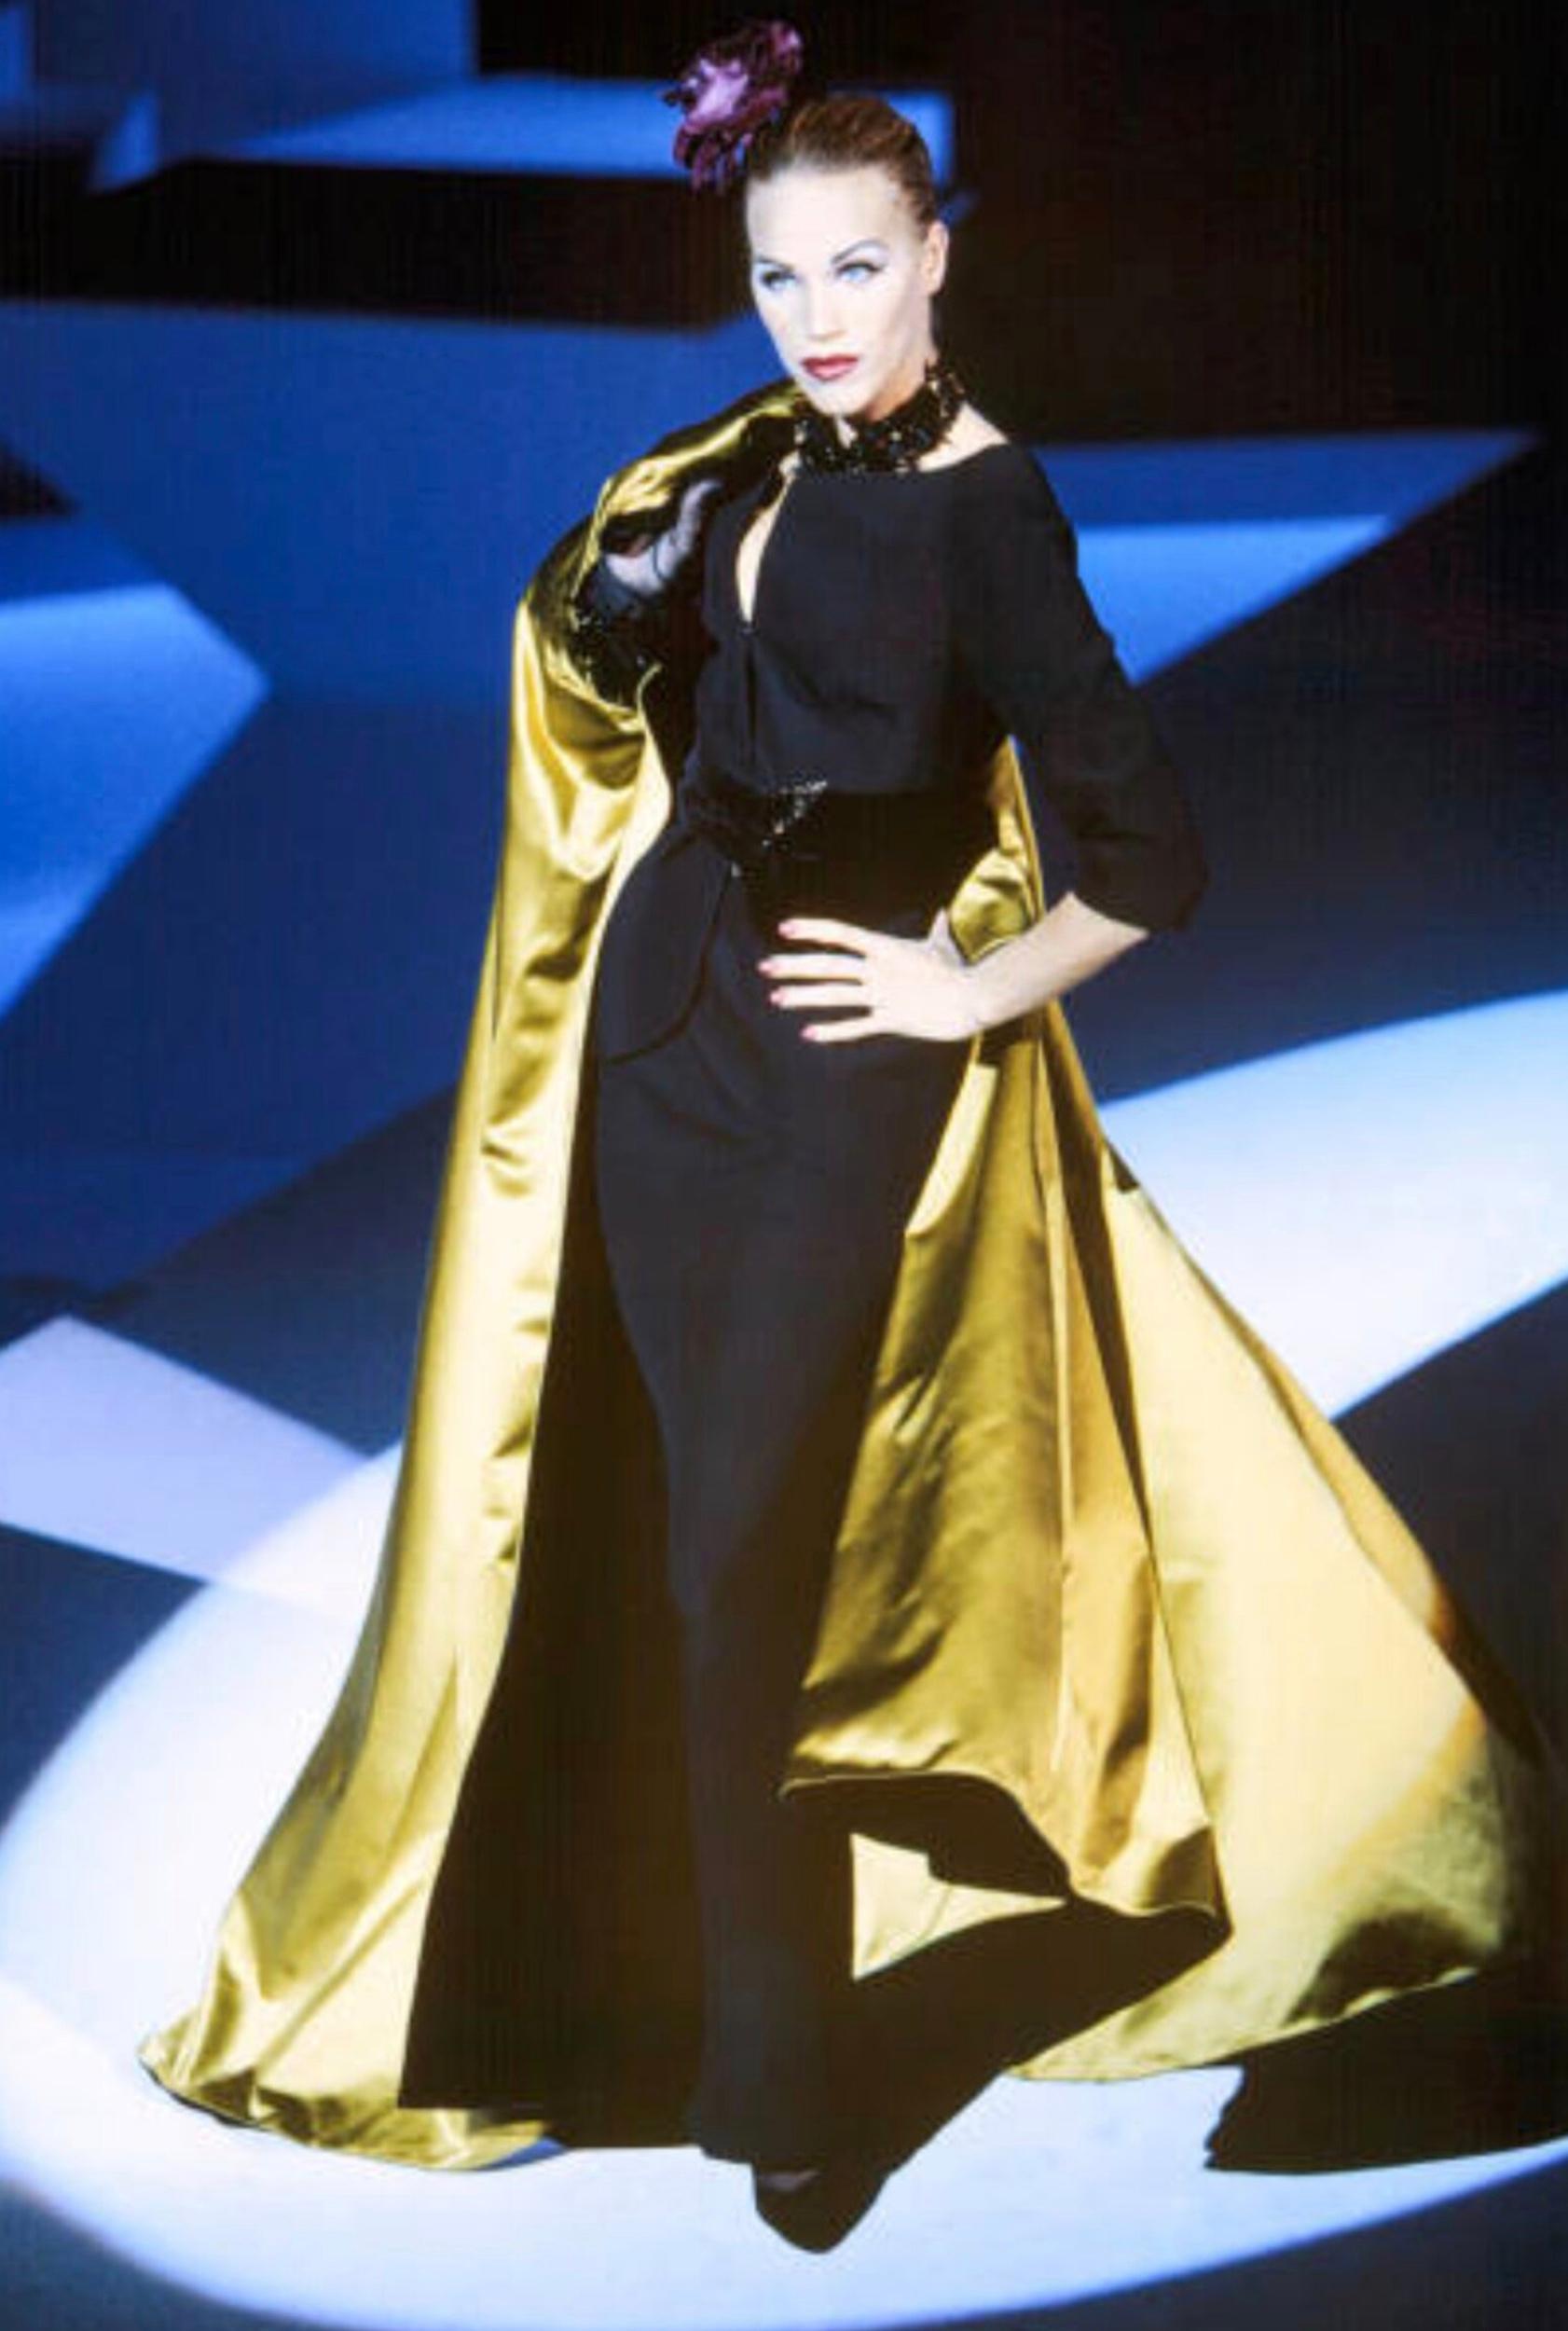 
Ikonisches Stück von Thierry Mugler
Fabelhaft präsentiert von Emma Sojberg bei der legendären FW1995-96 Fashionshow!
Schwarzer eleganter Blazer mit wunderschönem Ausschnitt! Angesetzter dramatischer Samtgürtel an der Taille. Highlight ist die